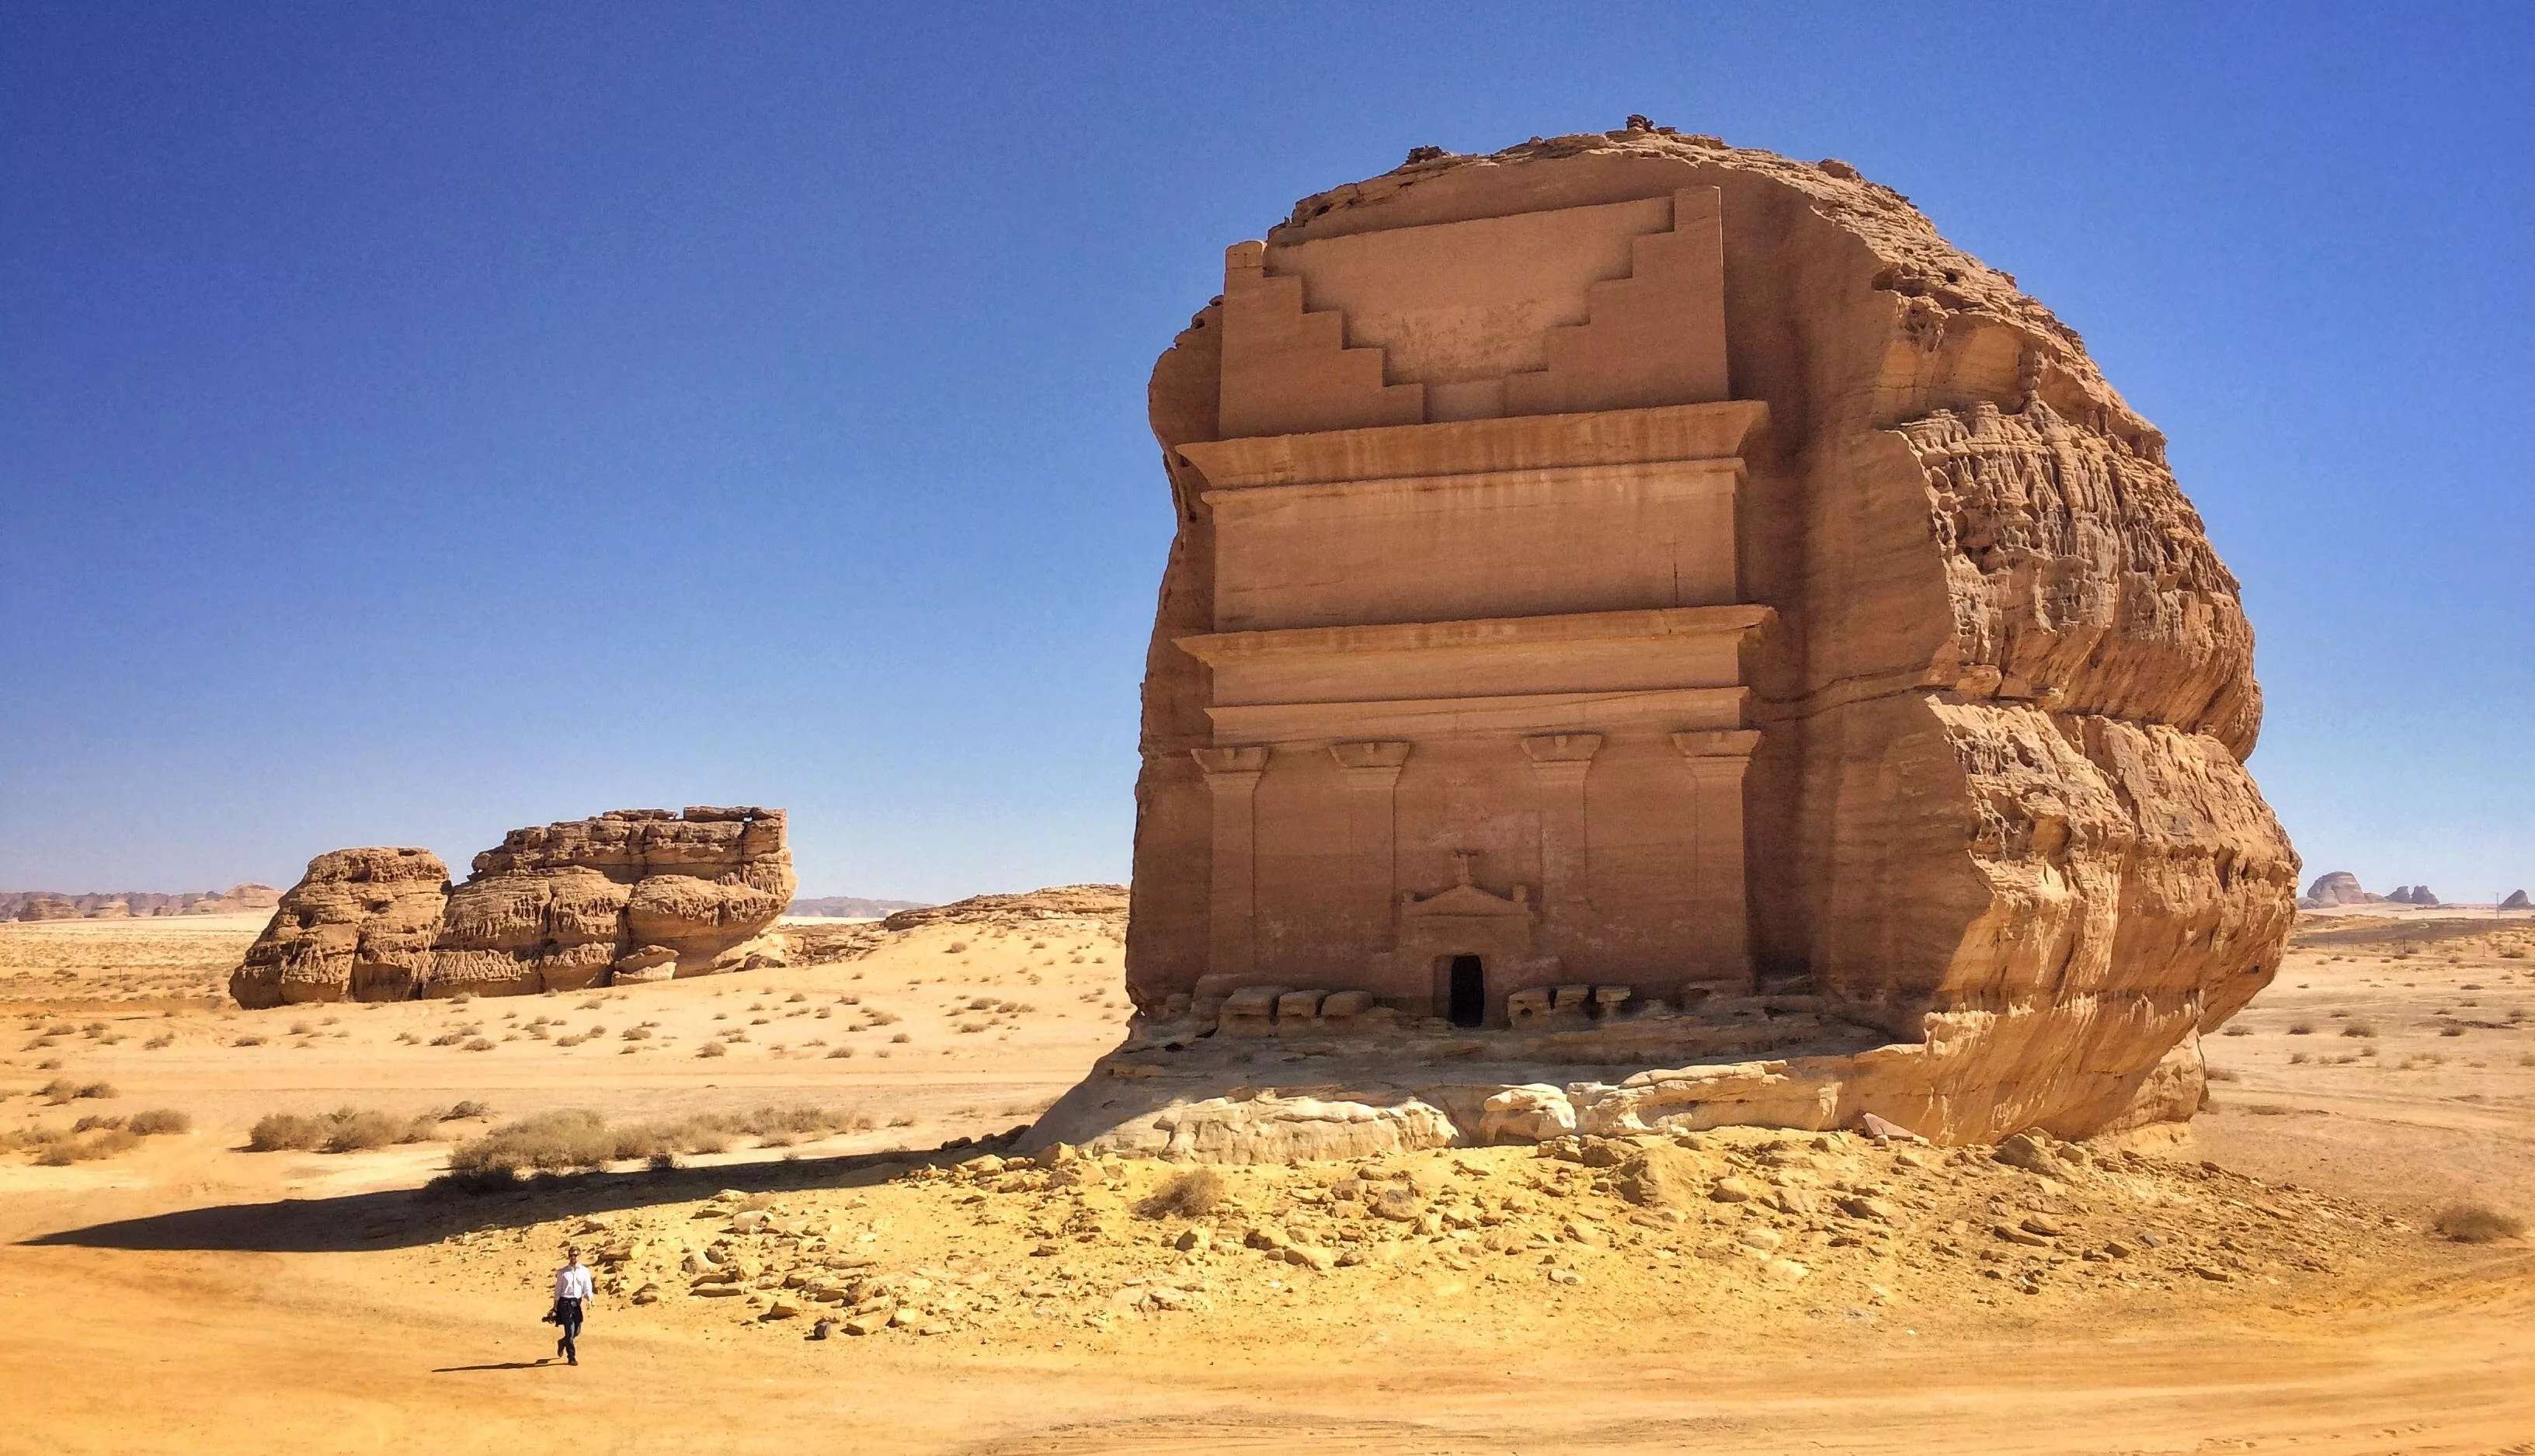 السياحة في السعودية: 9 اماكن سياحية في المدينة المنورة، اجعليها وجهتكِ المقبلة